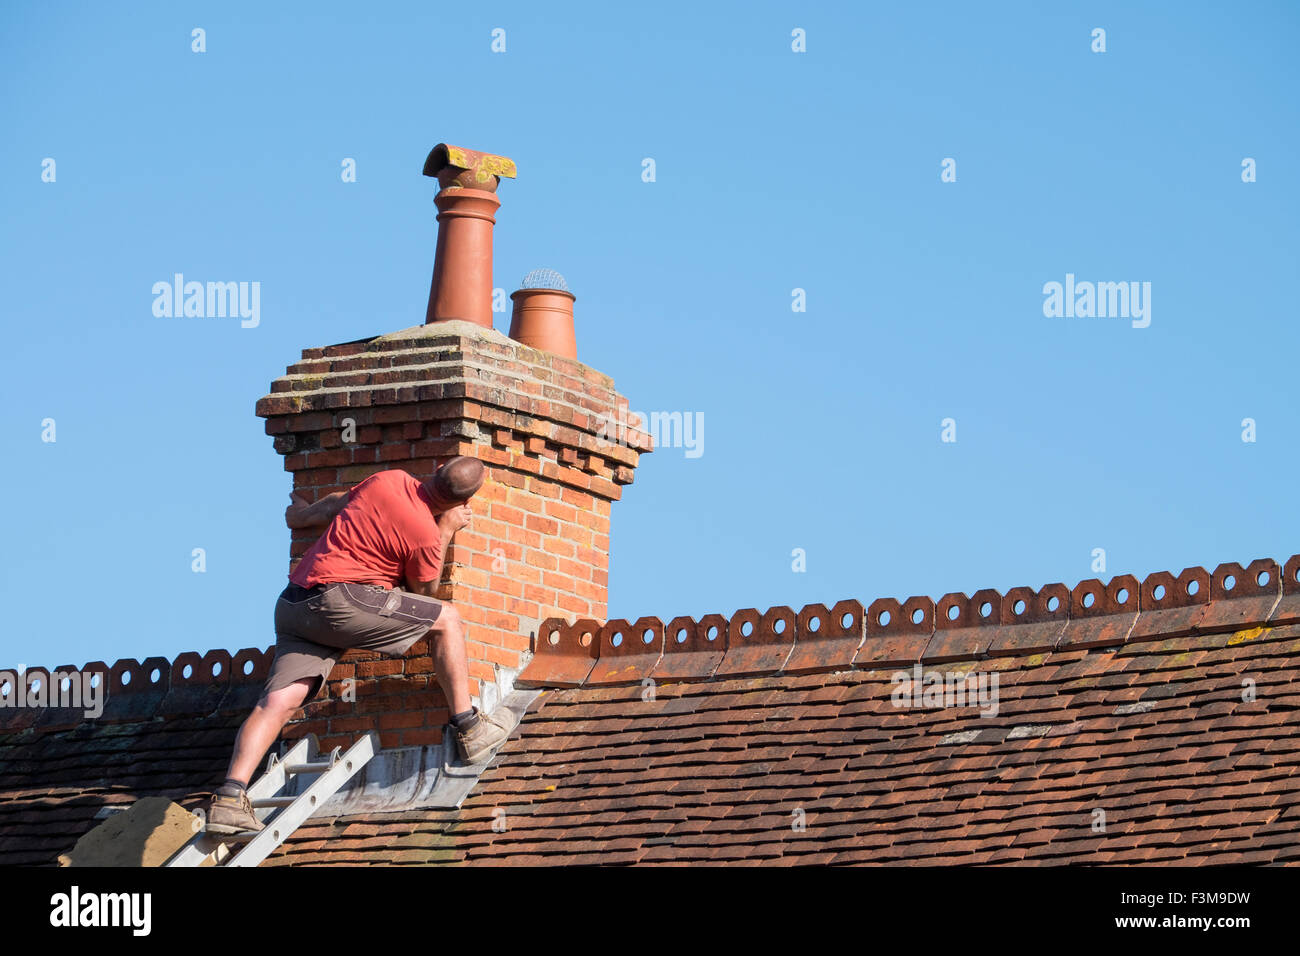 Un homme sur un toit de l'inspection d'une cheminée pour la réparation Banque D'Images